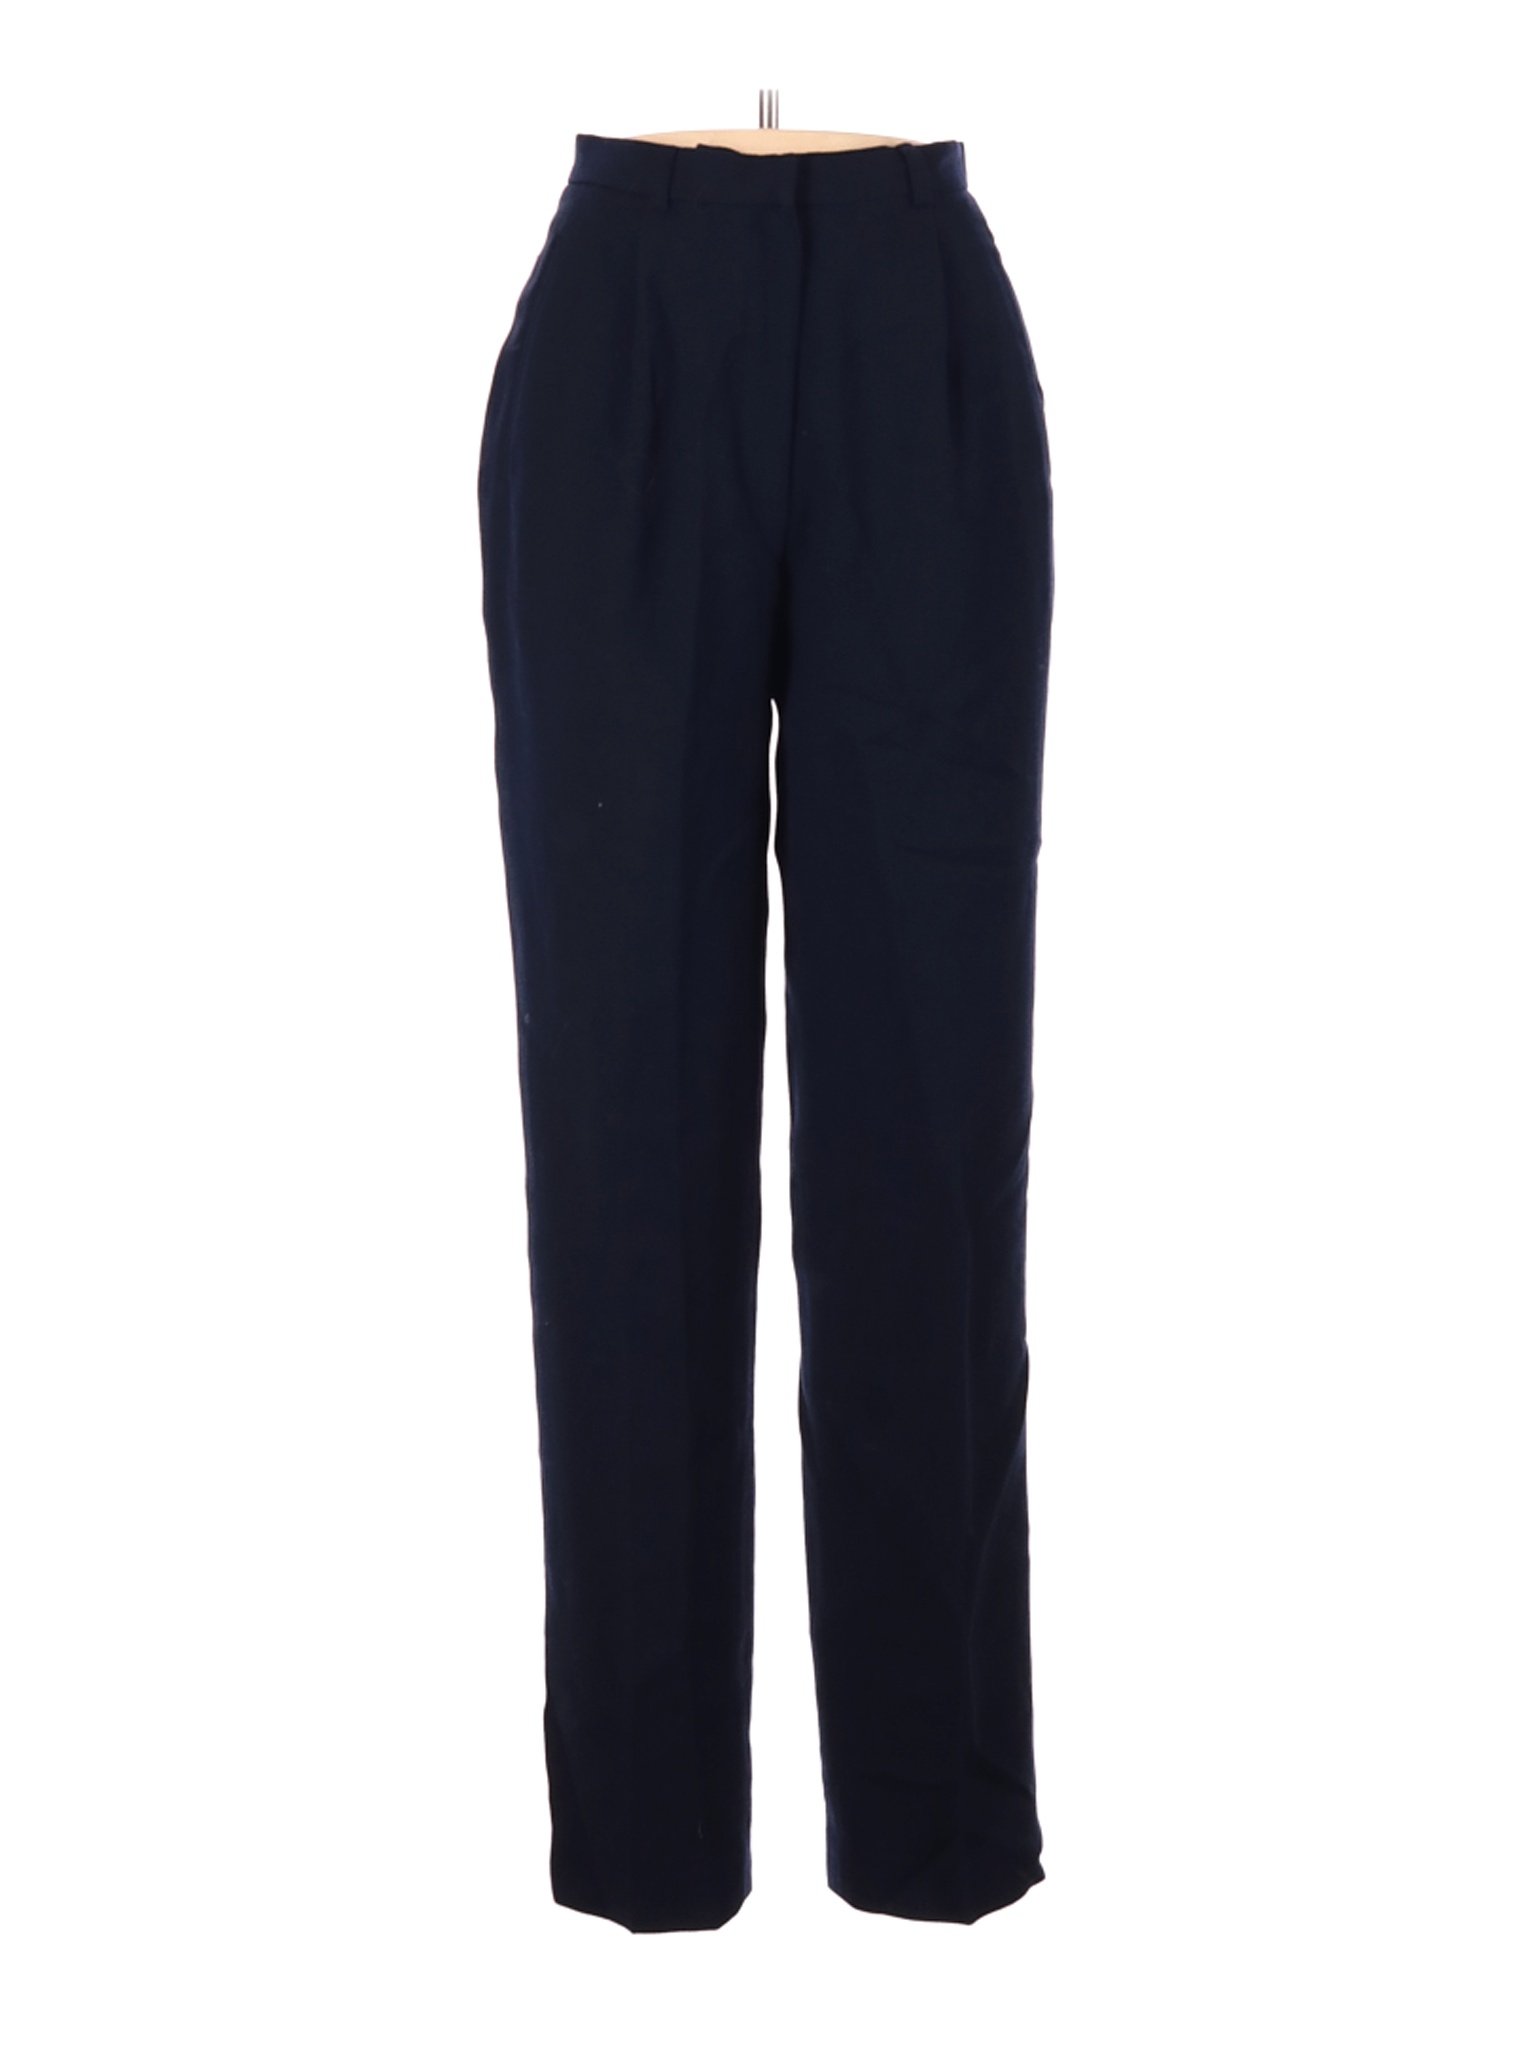 Lauren by Ralph Lauren Women Blue Wool Pants 6 Petites | eBay